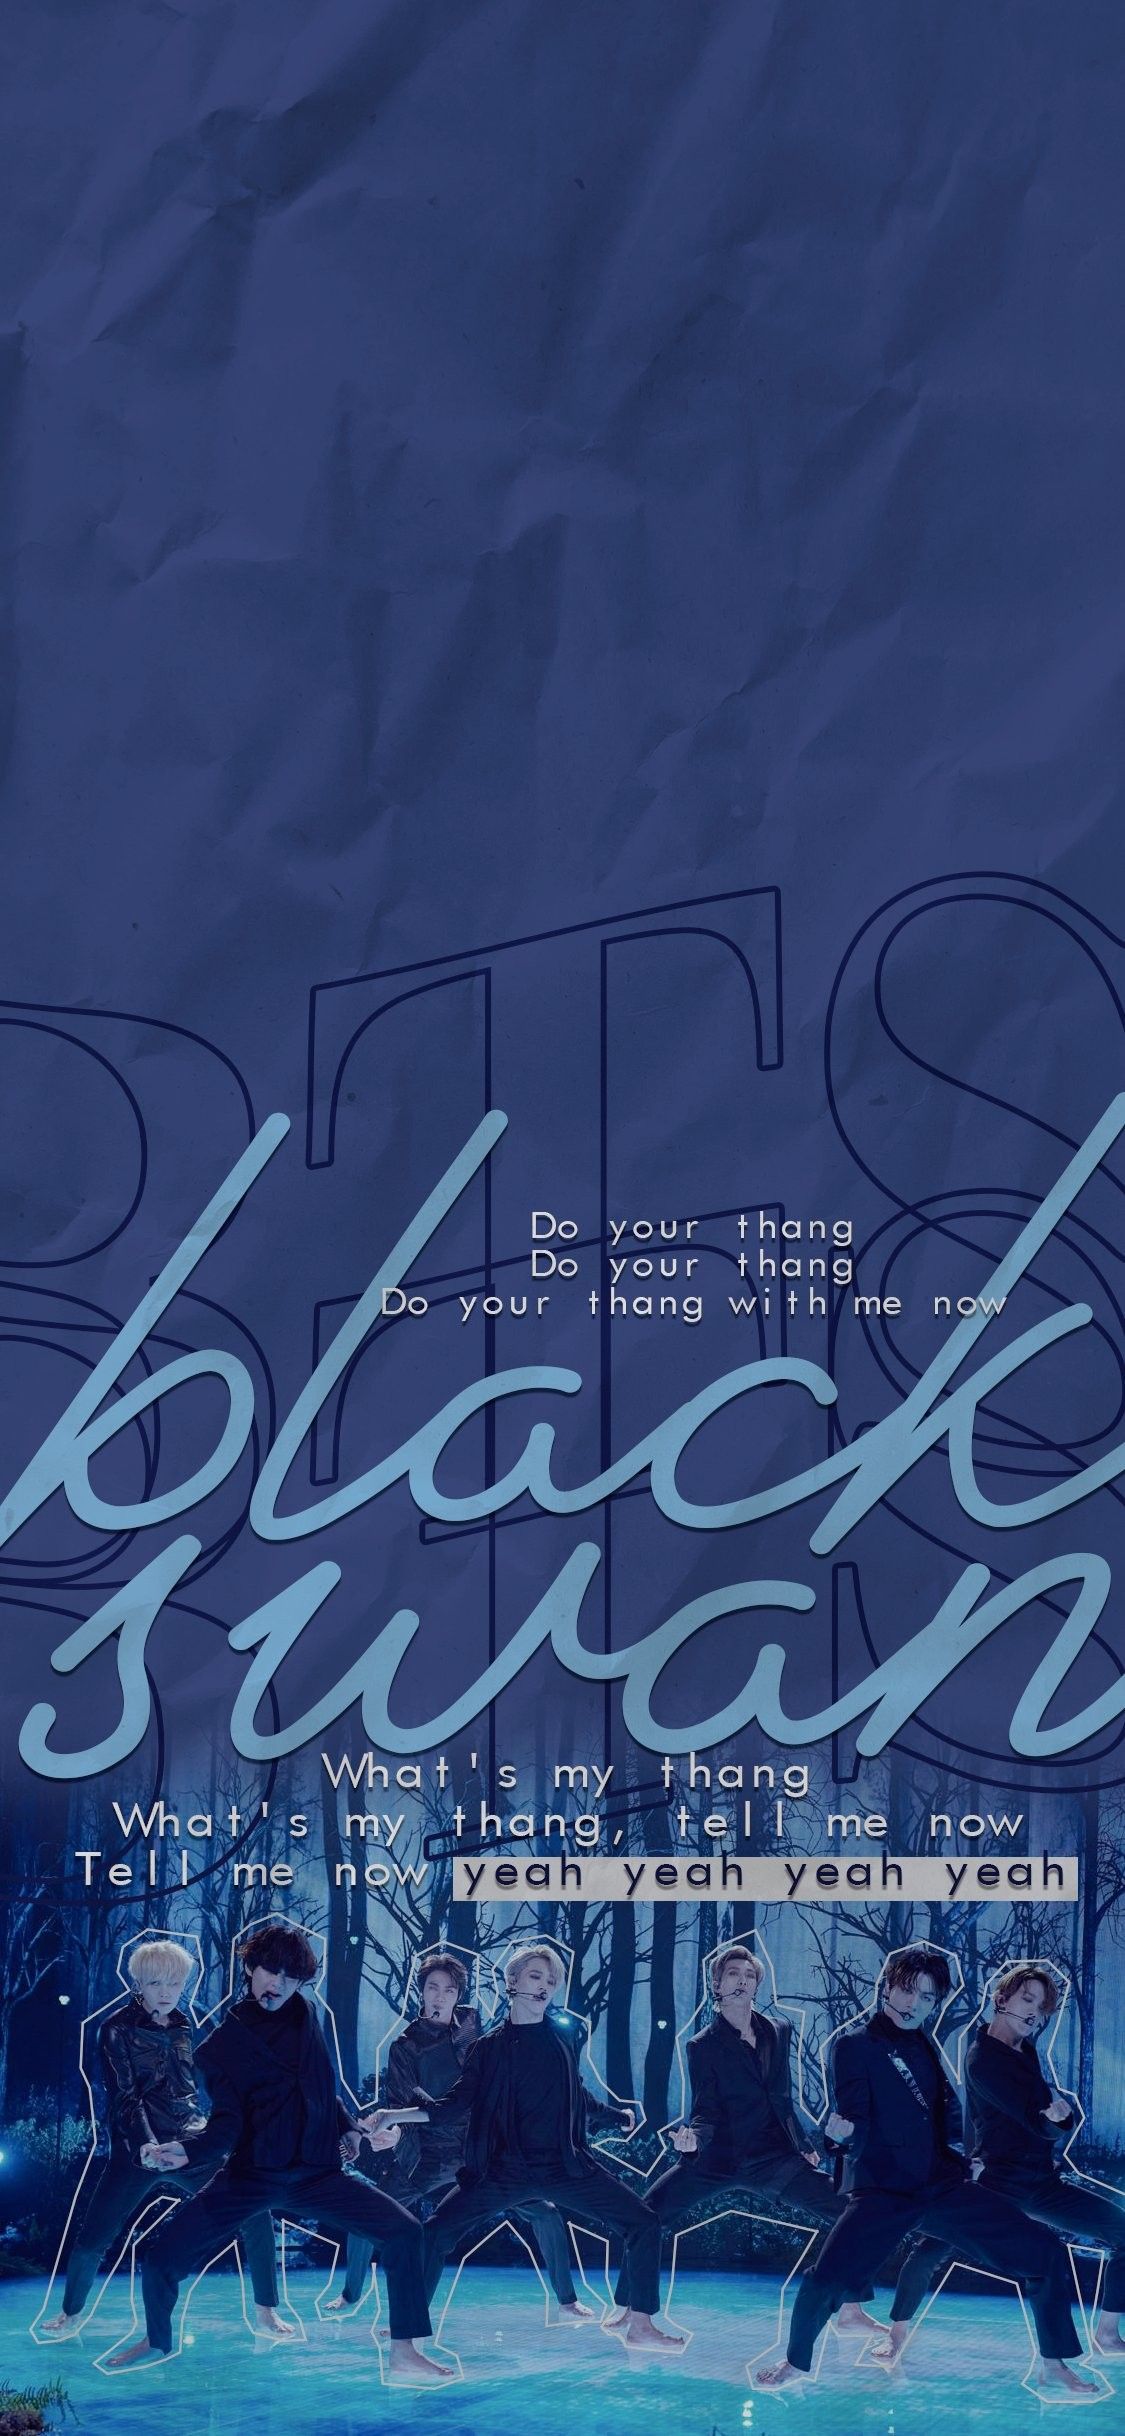  BTS  Black  Swan  Phone Wallpapers  Wallpaper  Cave